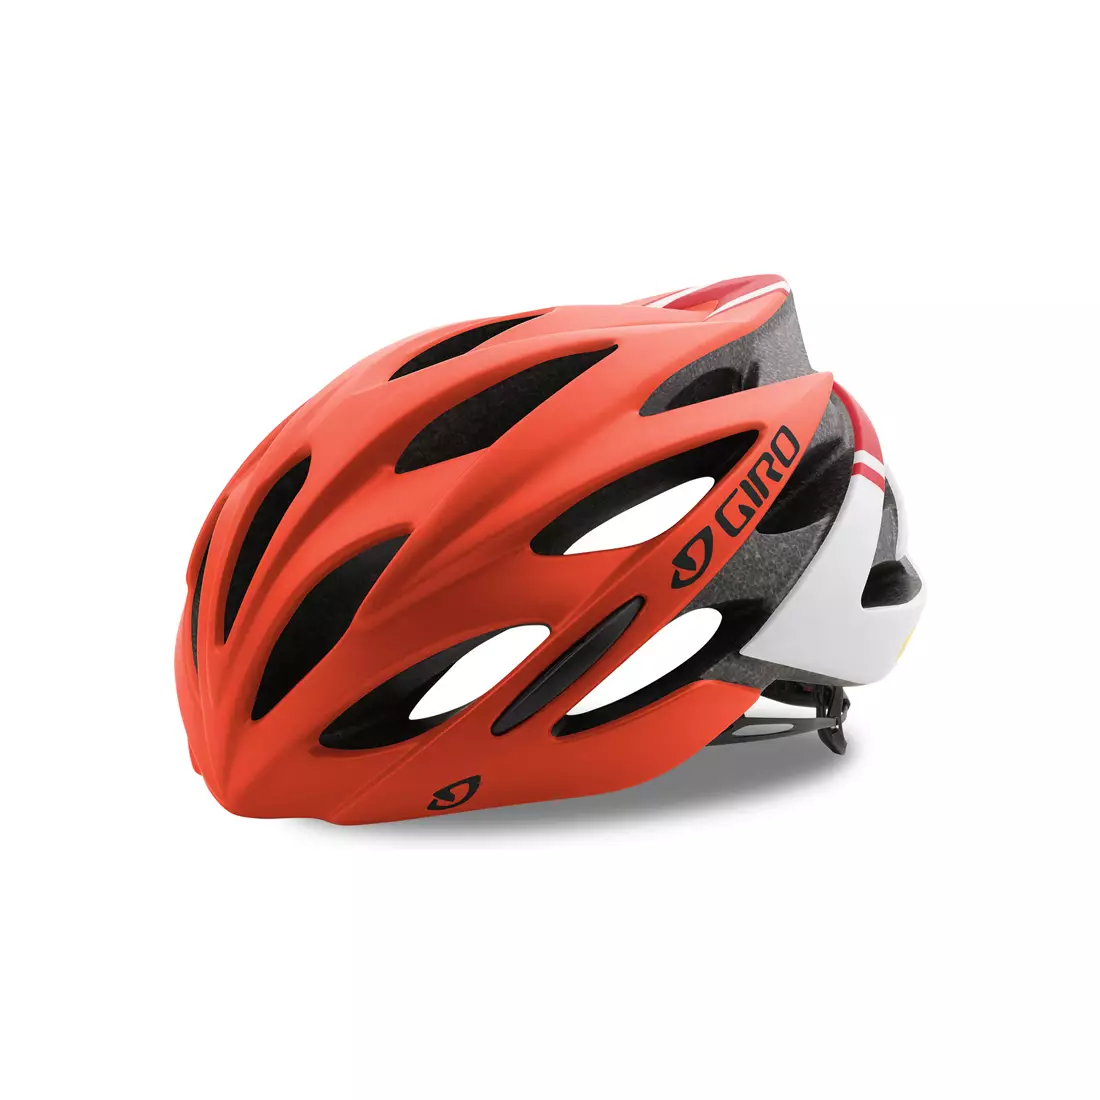 GIRO SAVANT MIPS - red bicycle helmet